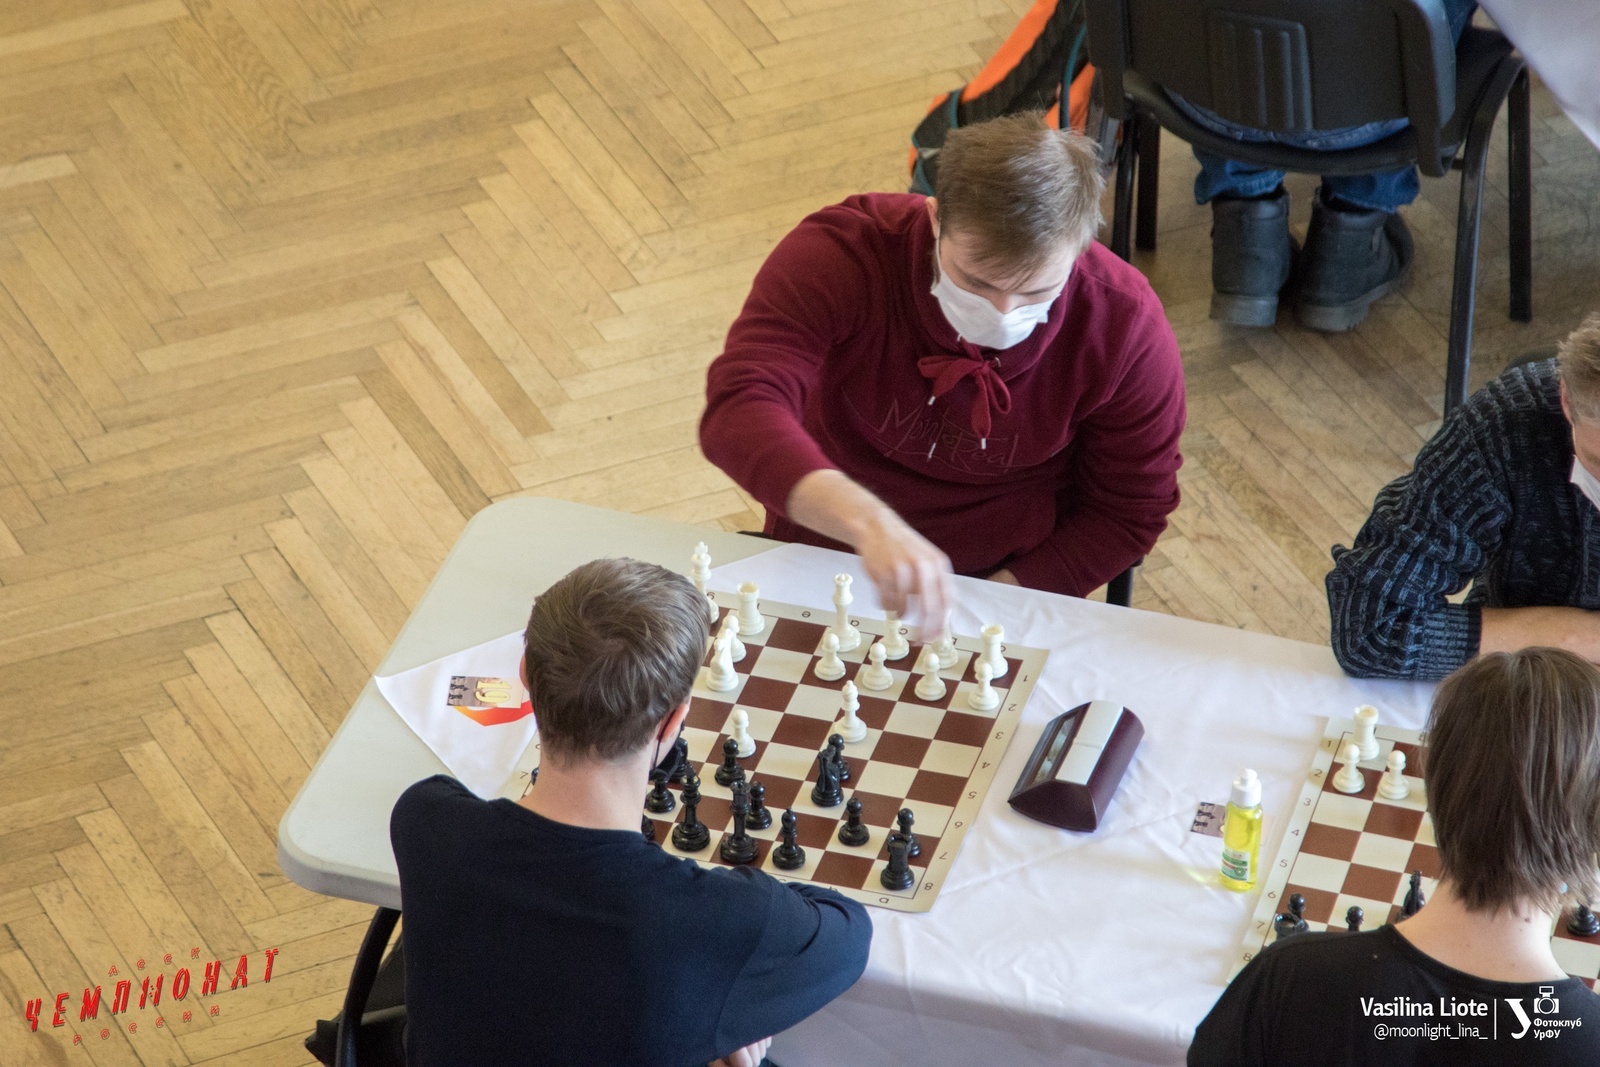 Участники шахматного турнира играют в зале где имеются 8 столиков